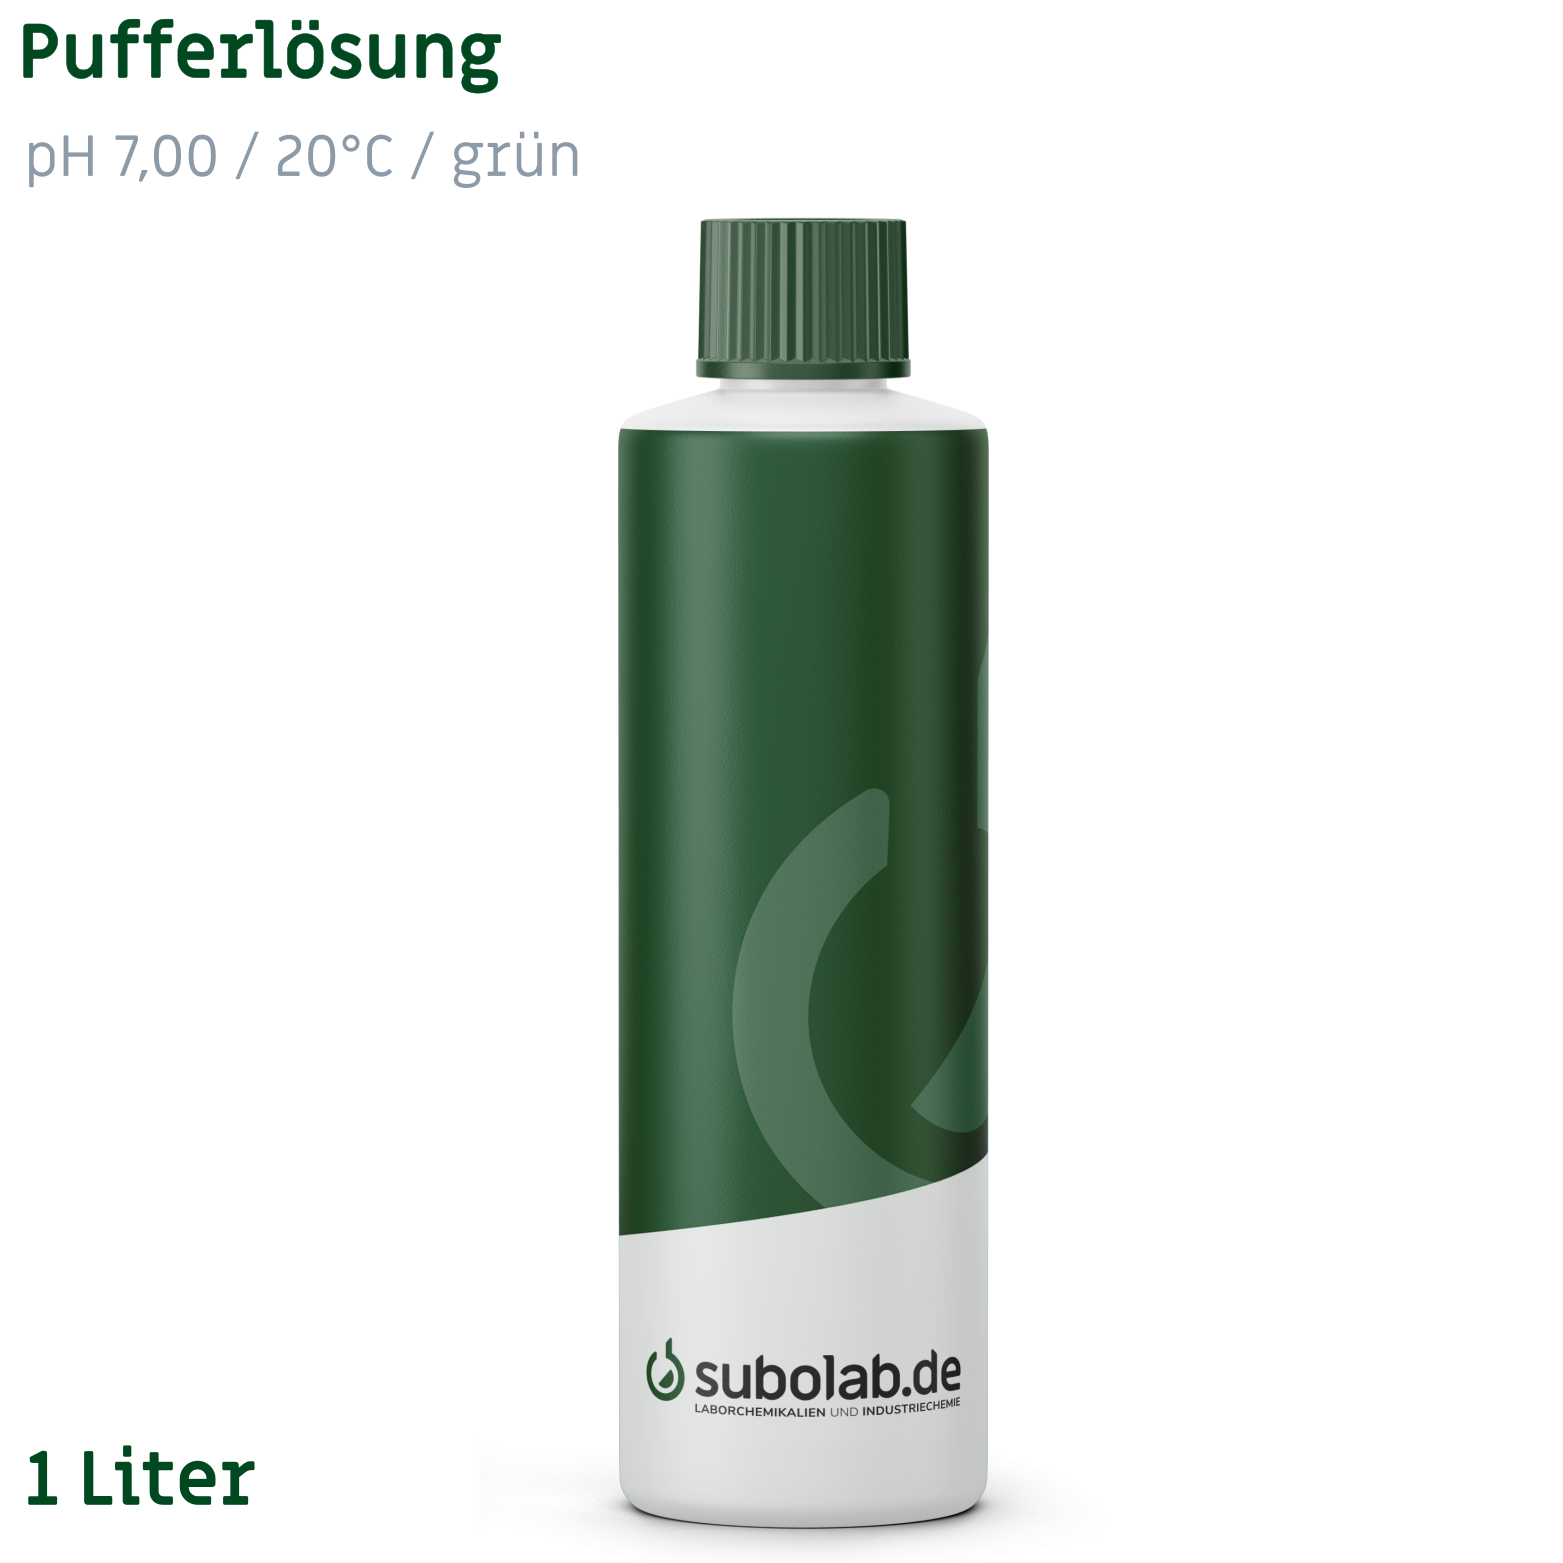 Bild von Pufferlösung pH 7,00 / 20°C / grün (Kaliumdihydrogenphosphat, di-Natriumhydrogenphosphat) (1 Liter)